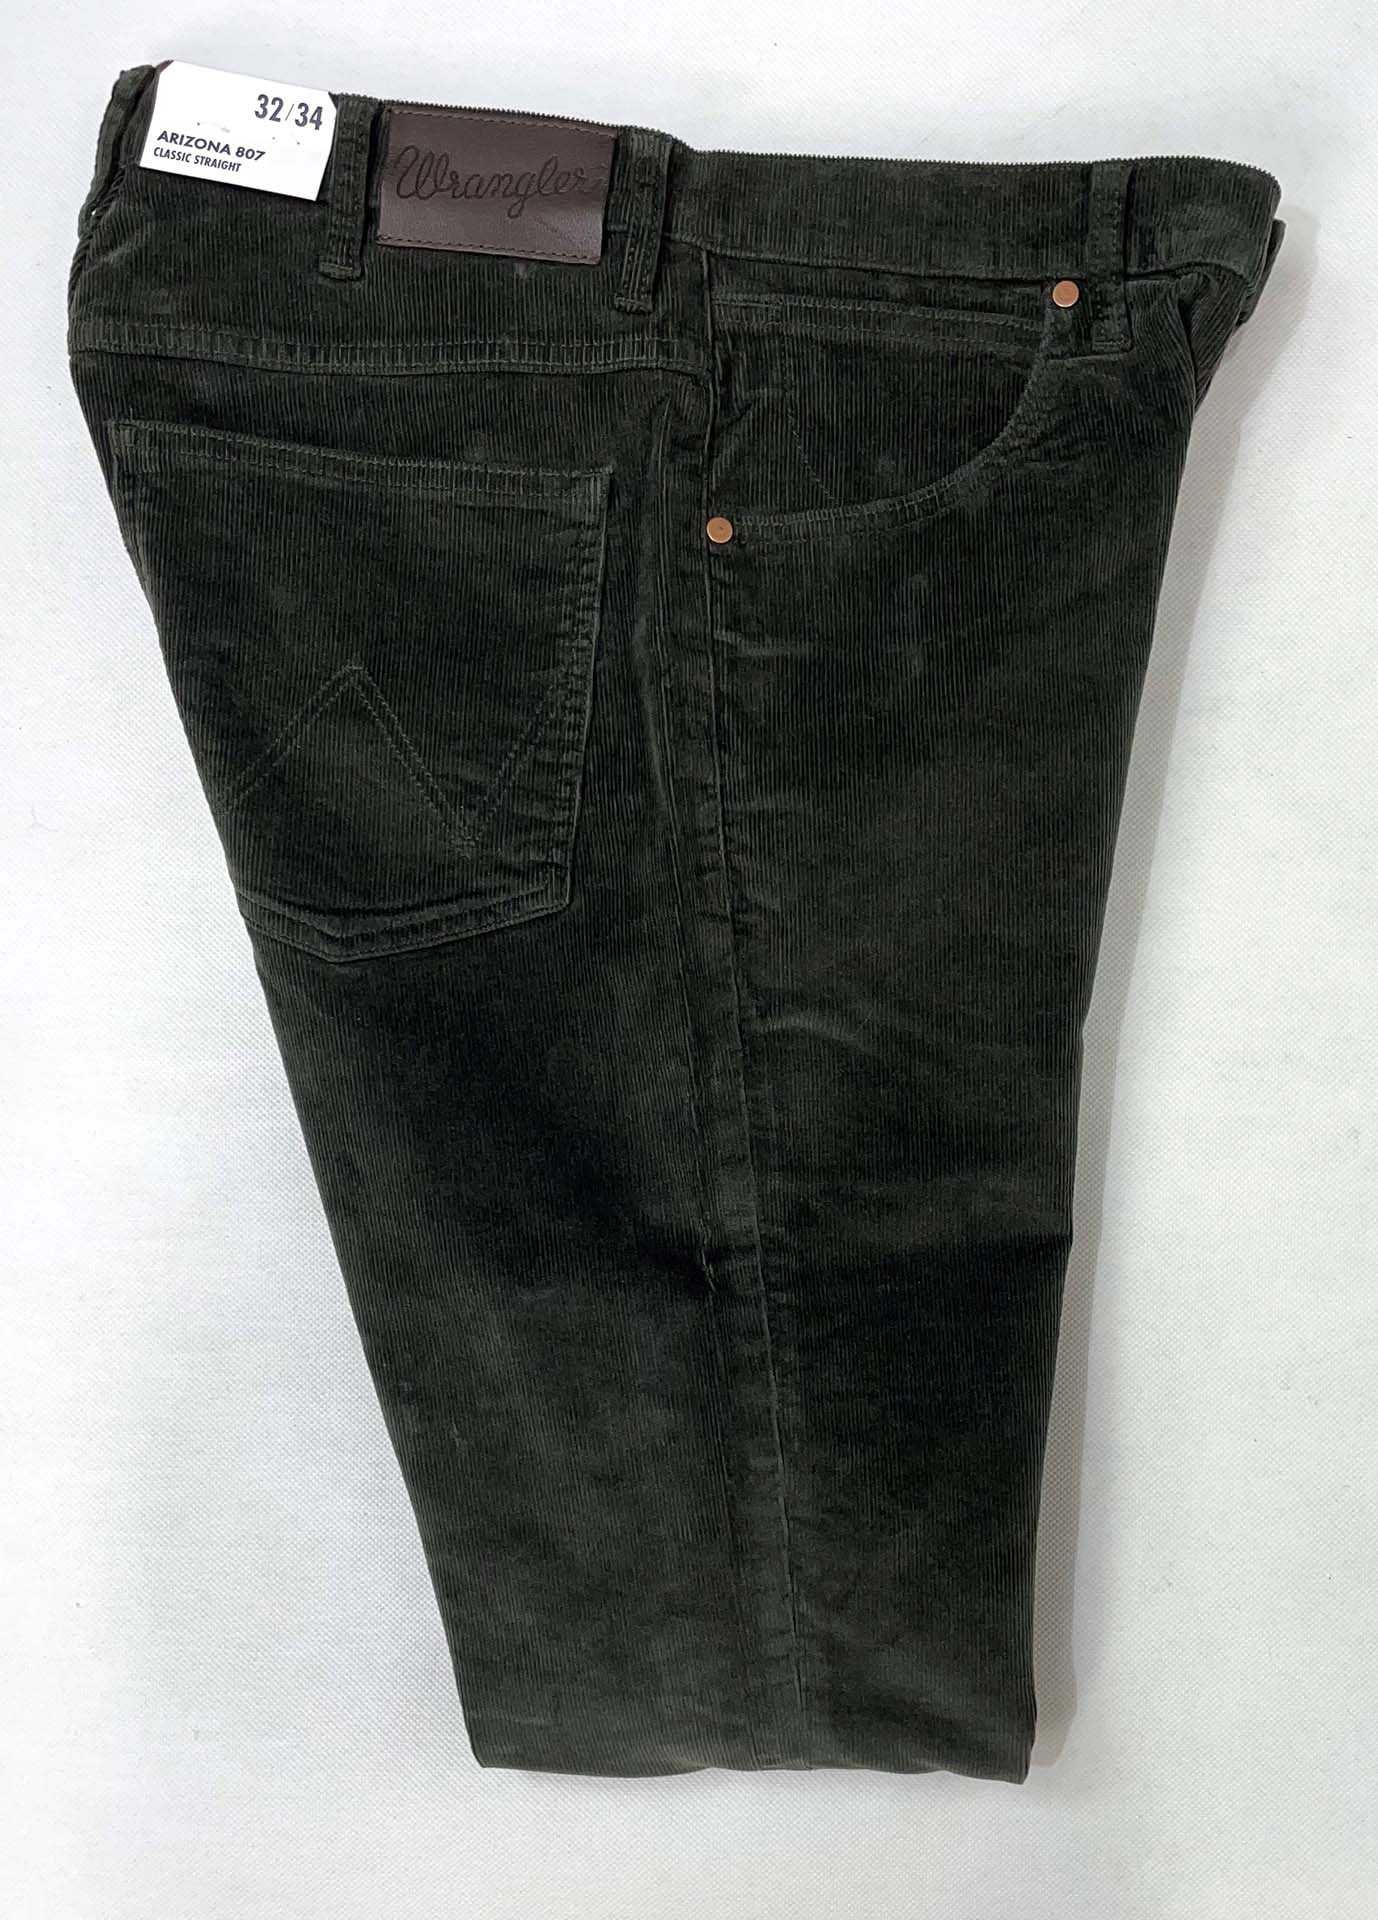 Spodnie męskie sztruks Wrangler Arizona Moss Green W33 L34